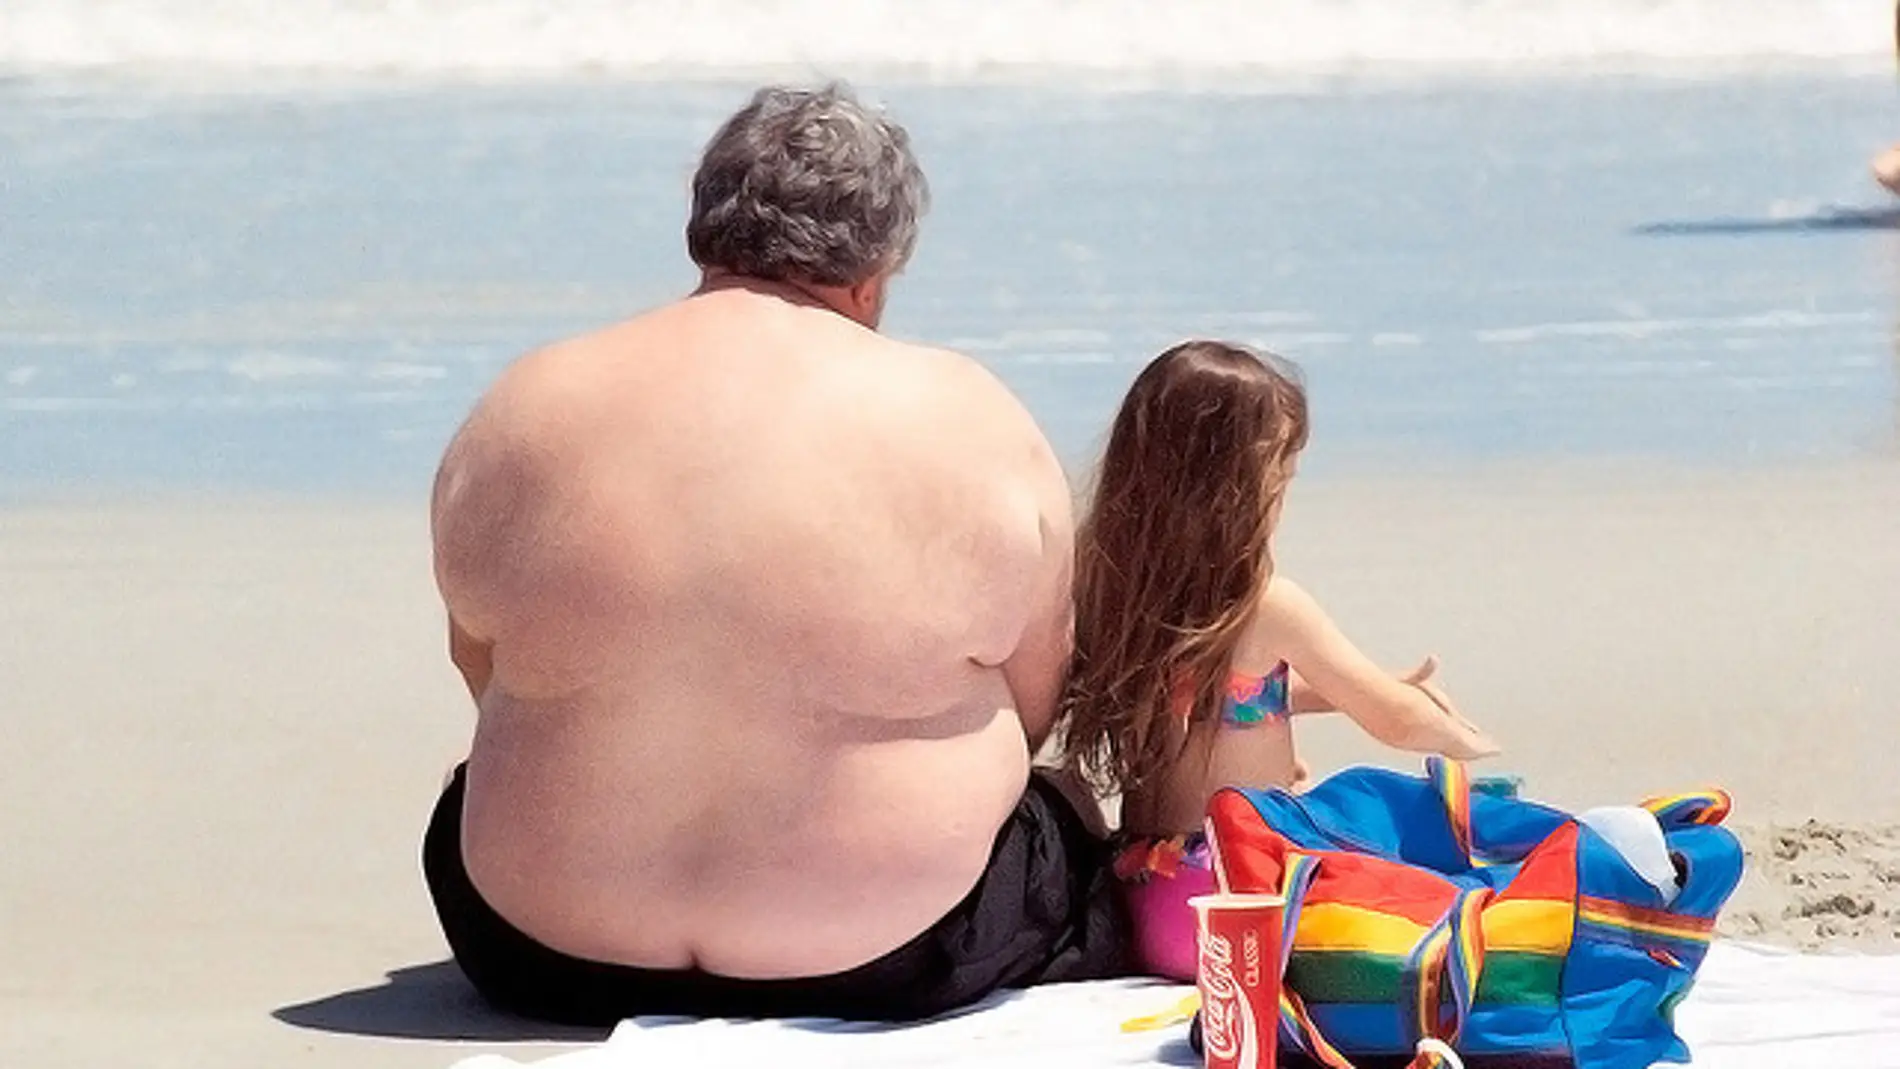 Un hombre obeso descansa en una playa co